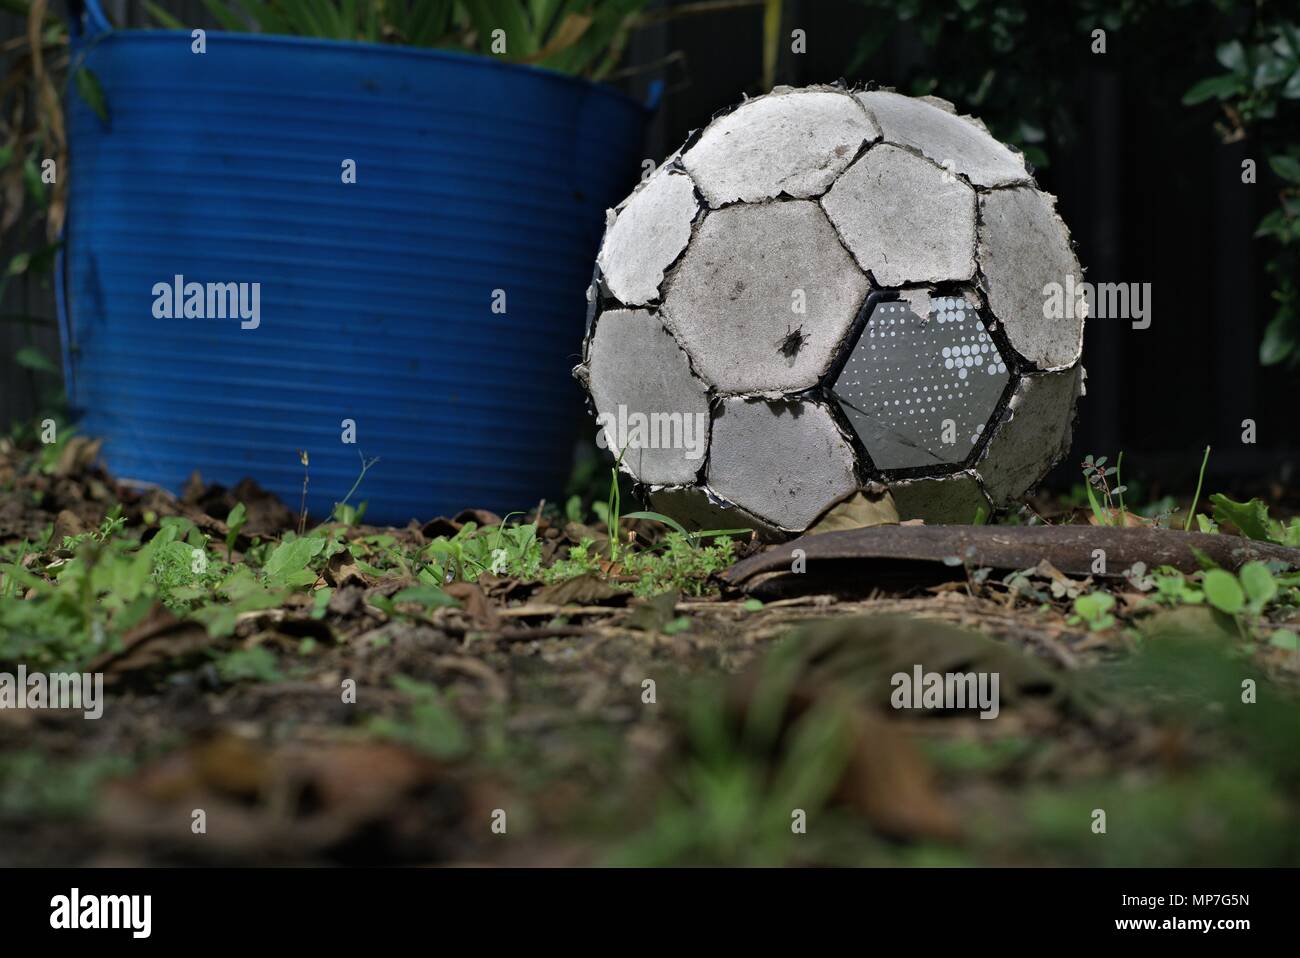 Lacerata vecchio pallone da calcio lay sull'erba. Consumato il calcio. Concetto di persona inattiva o oggetto inutile. Foto Stock